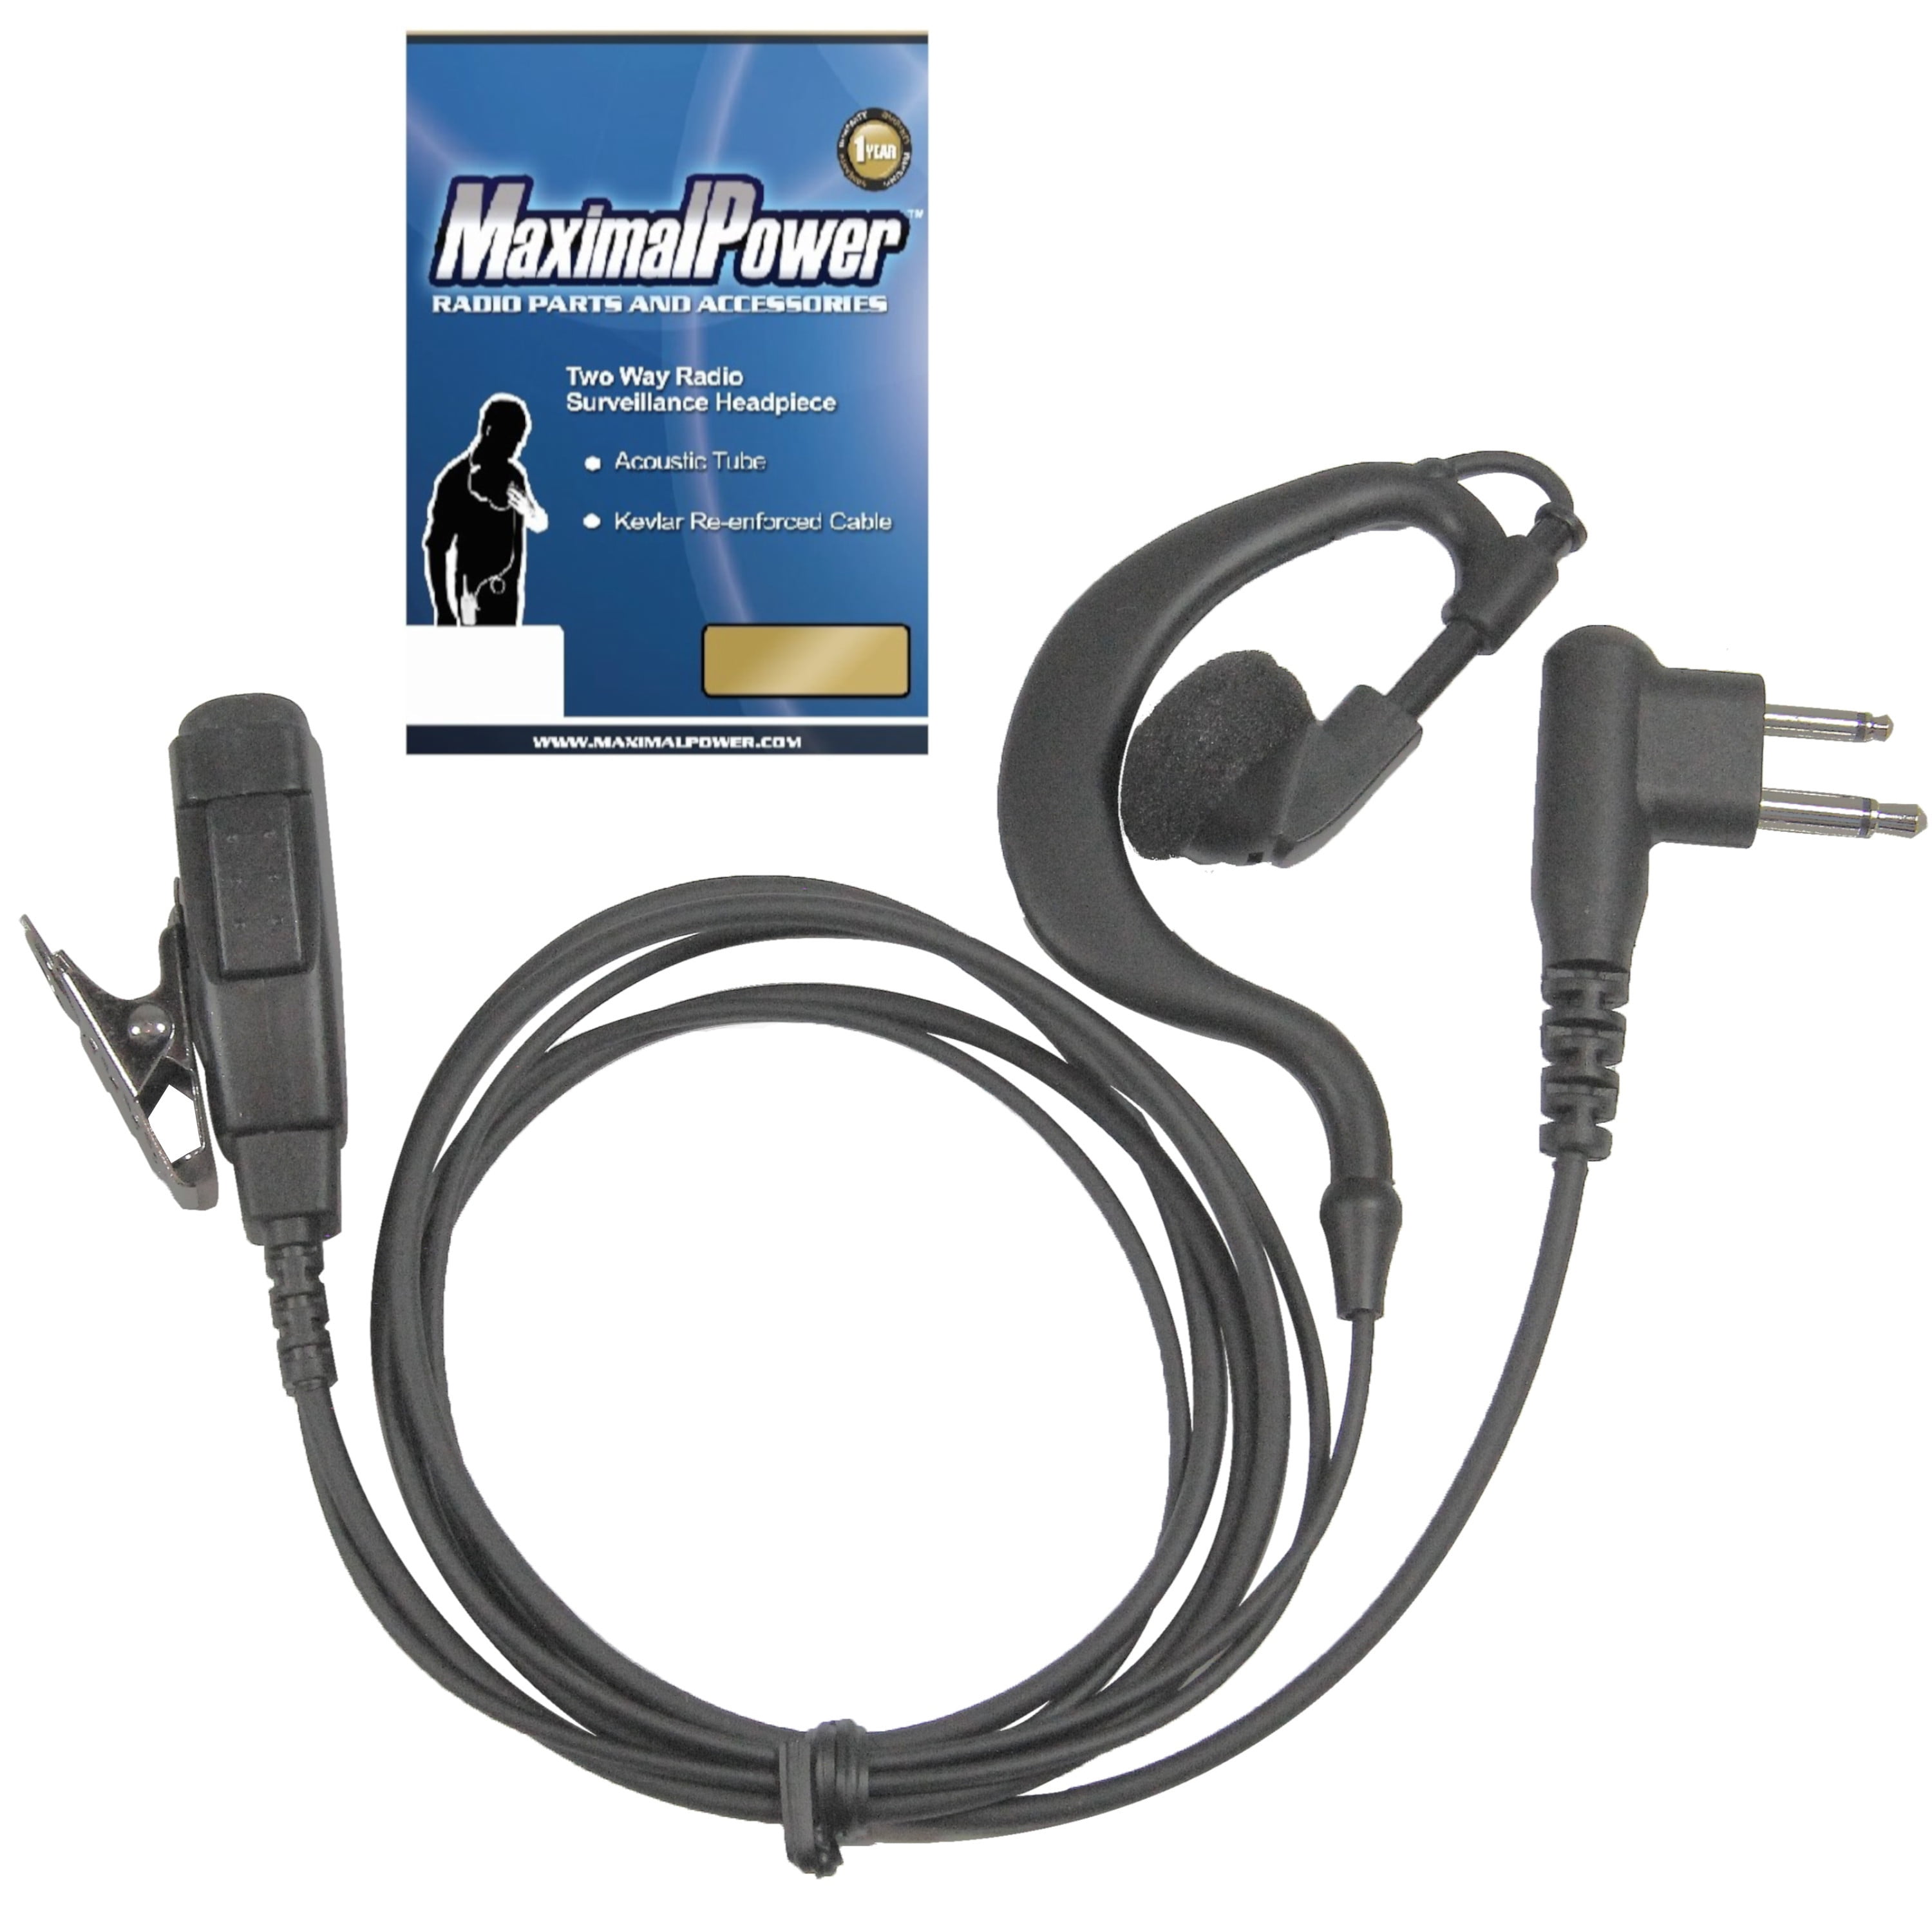 2-Pack HQRP D Shape Earpiece Headset for Motorola CLS1110 CP100 MV11 SV10 XU1100 